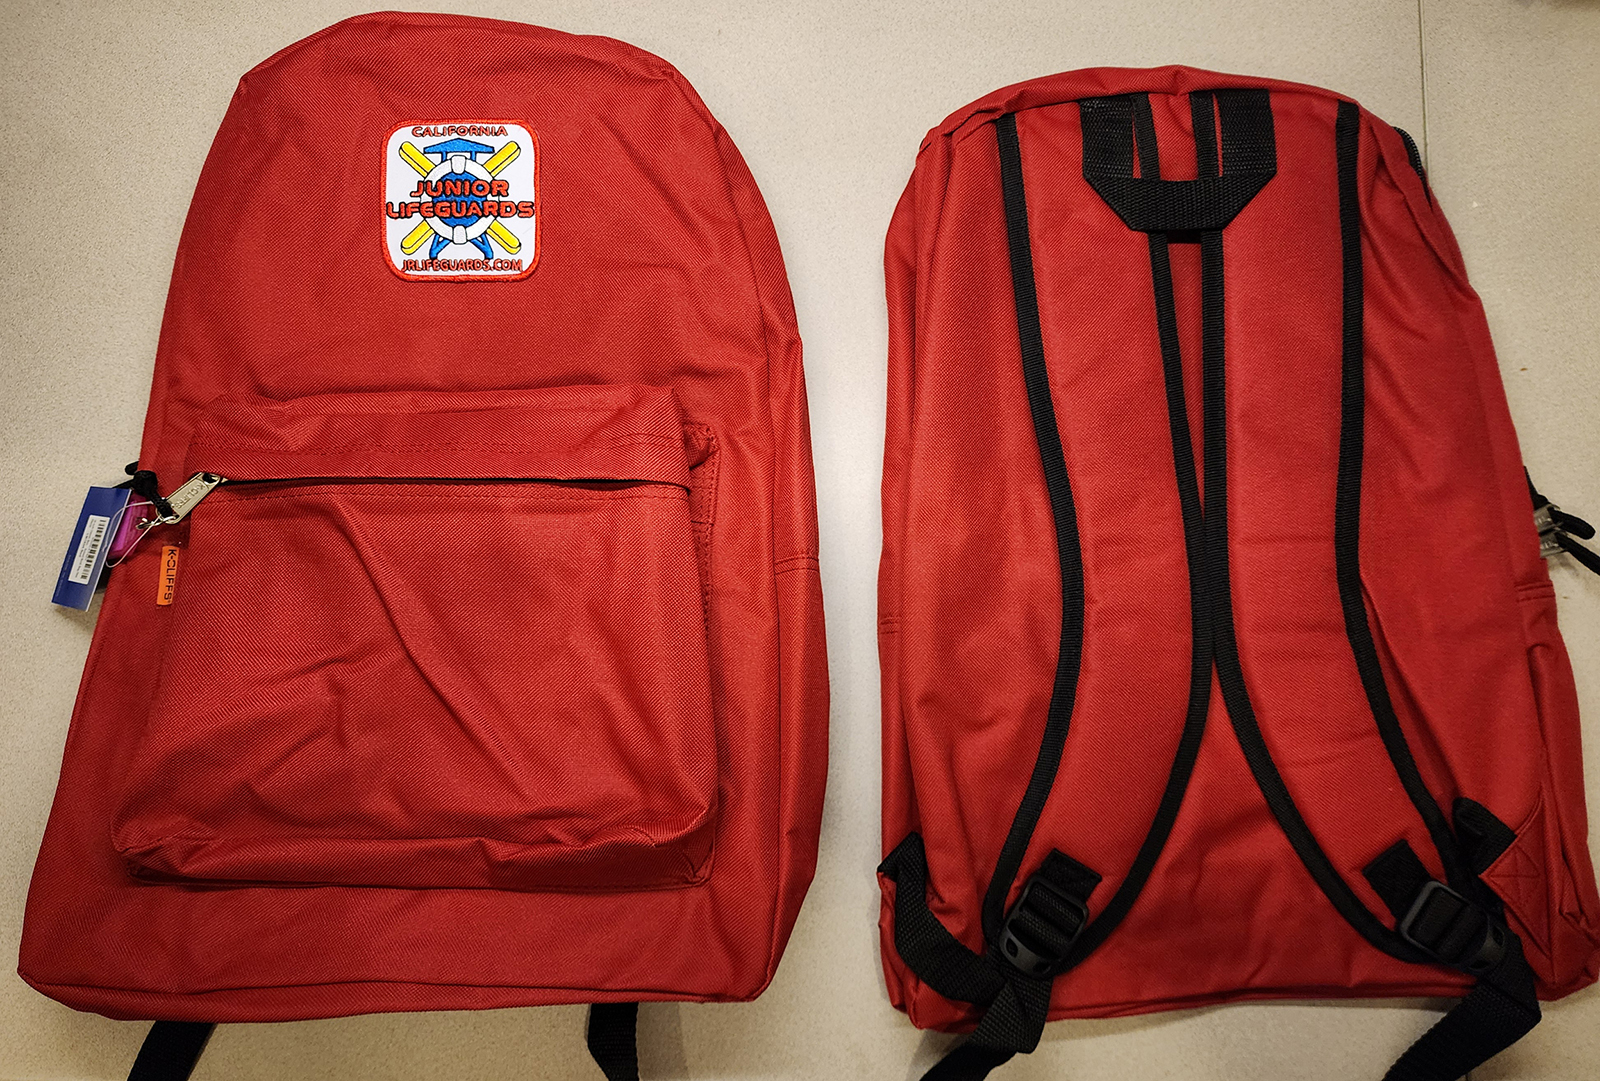 Jr Guards Backpack